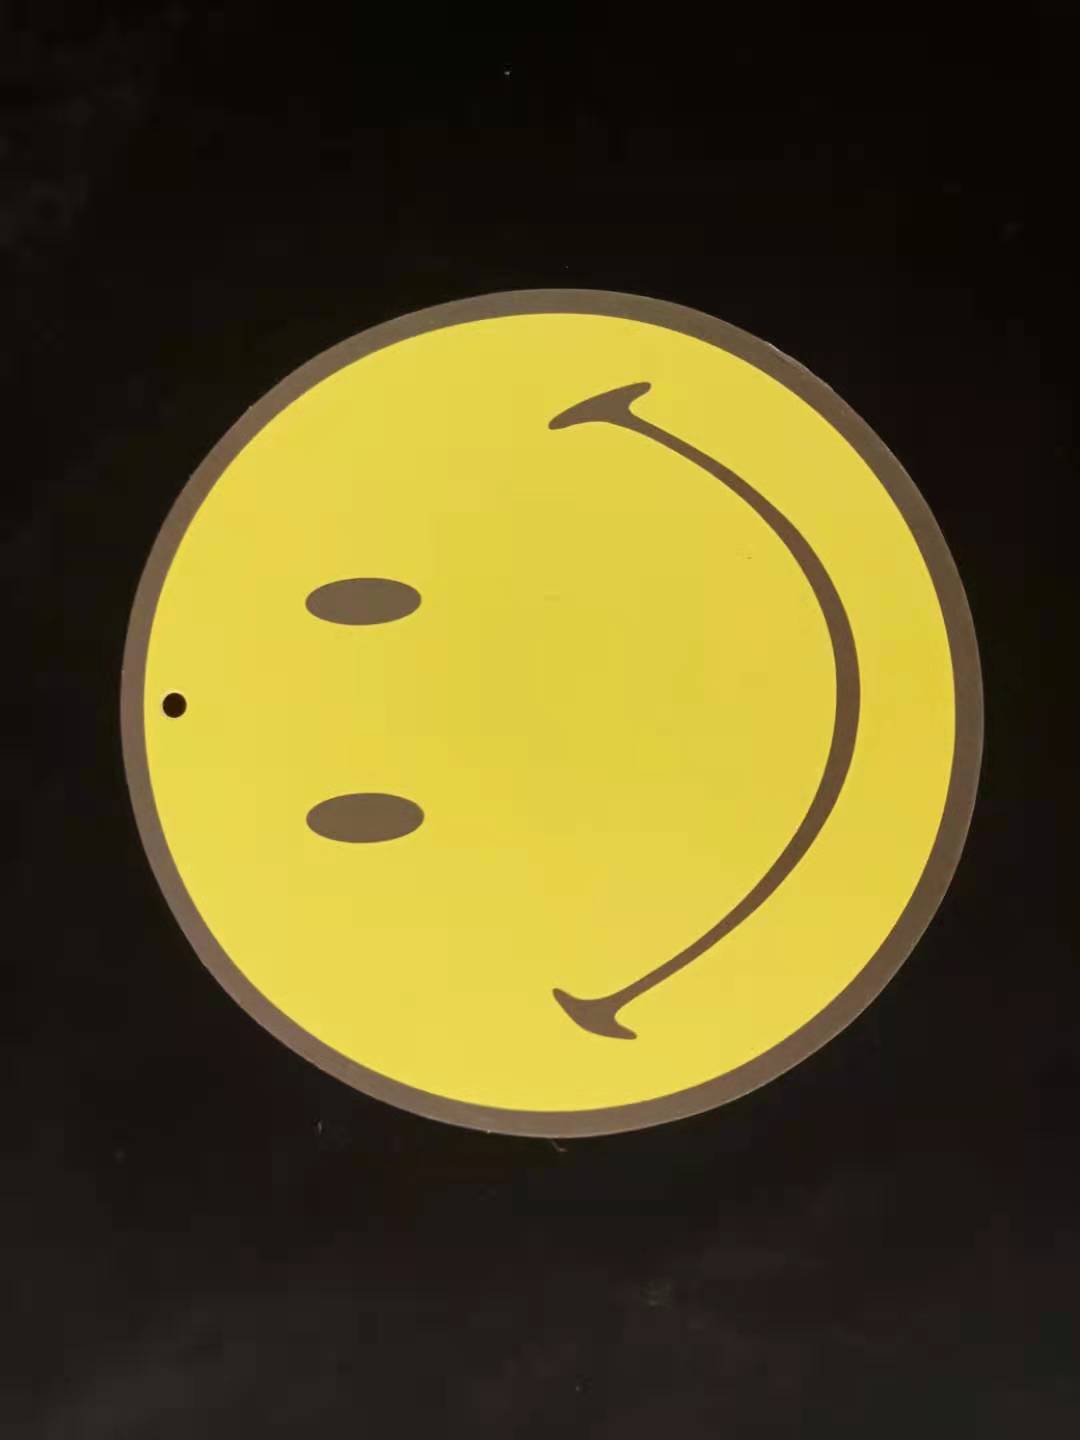 厂家直销黄色笑脸圆形吊牌 可用作多种商品包装辅料 特种纸吊牌 现货1